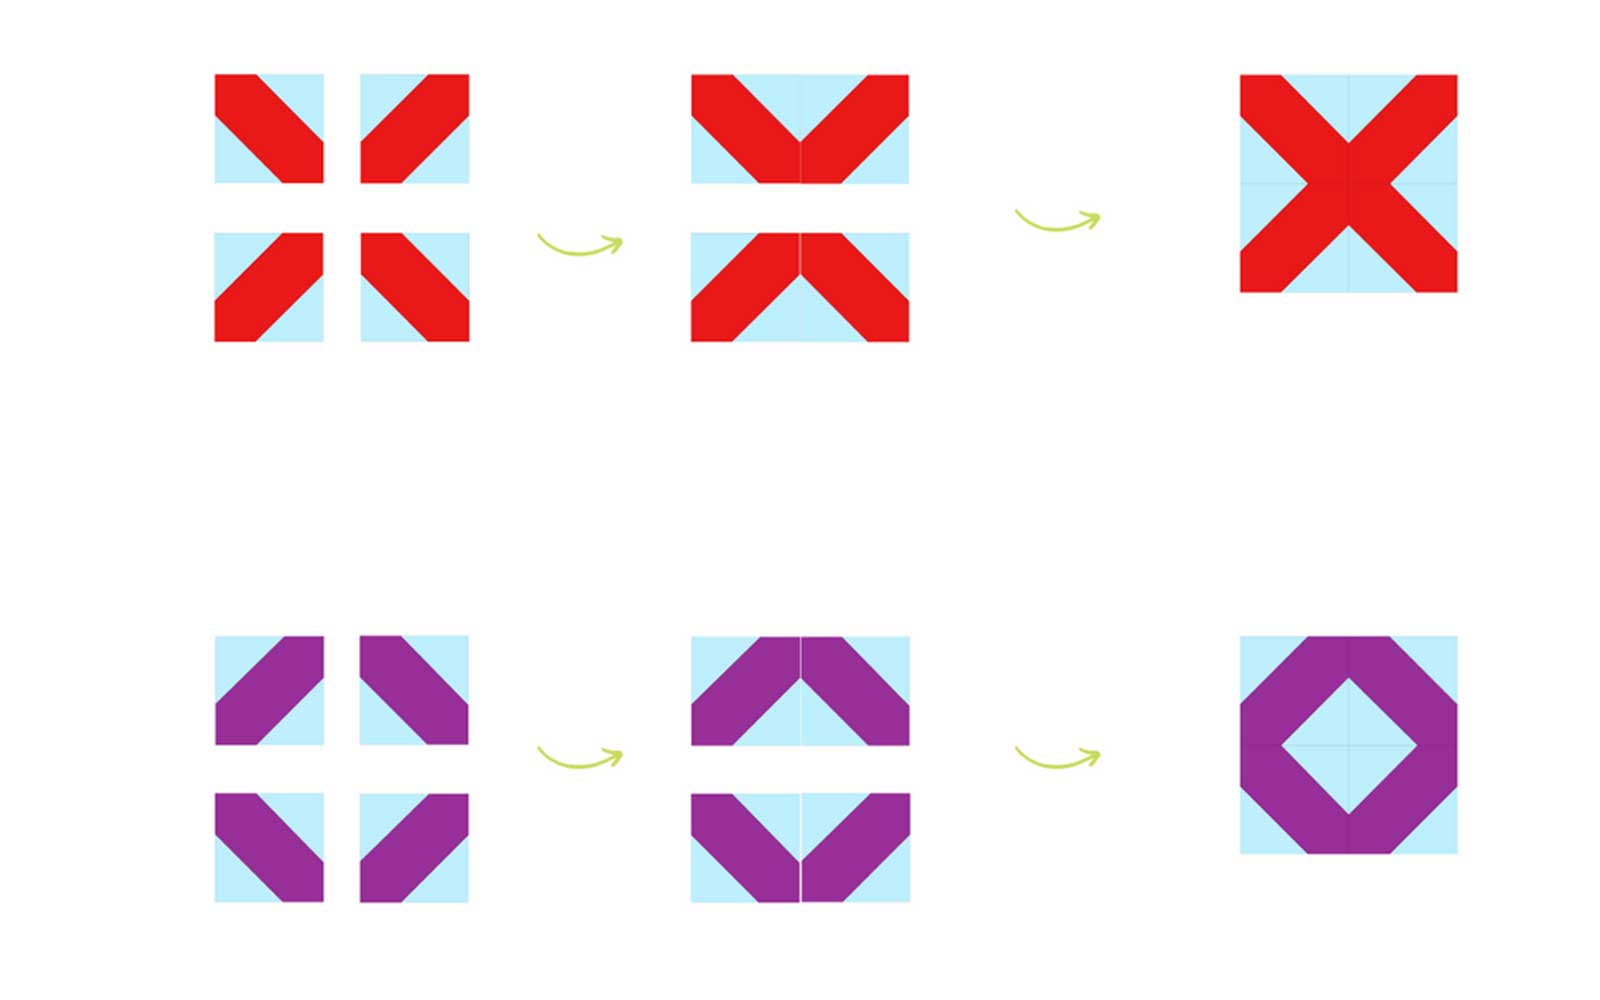 Rote X- und violette O-Block-Diagramme